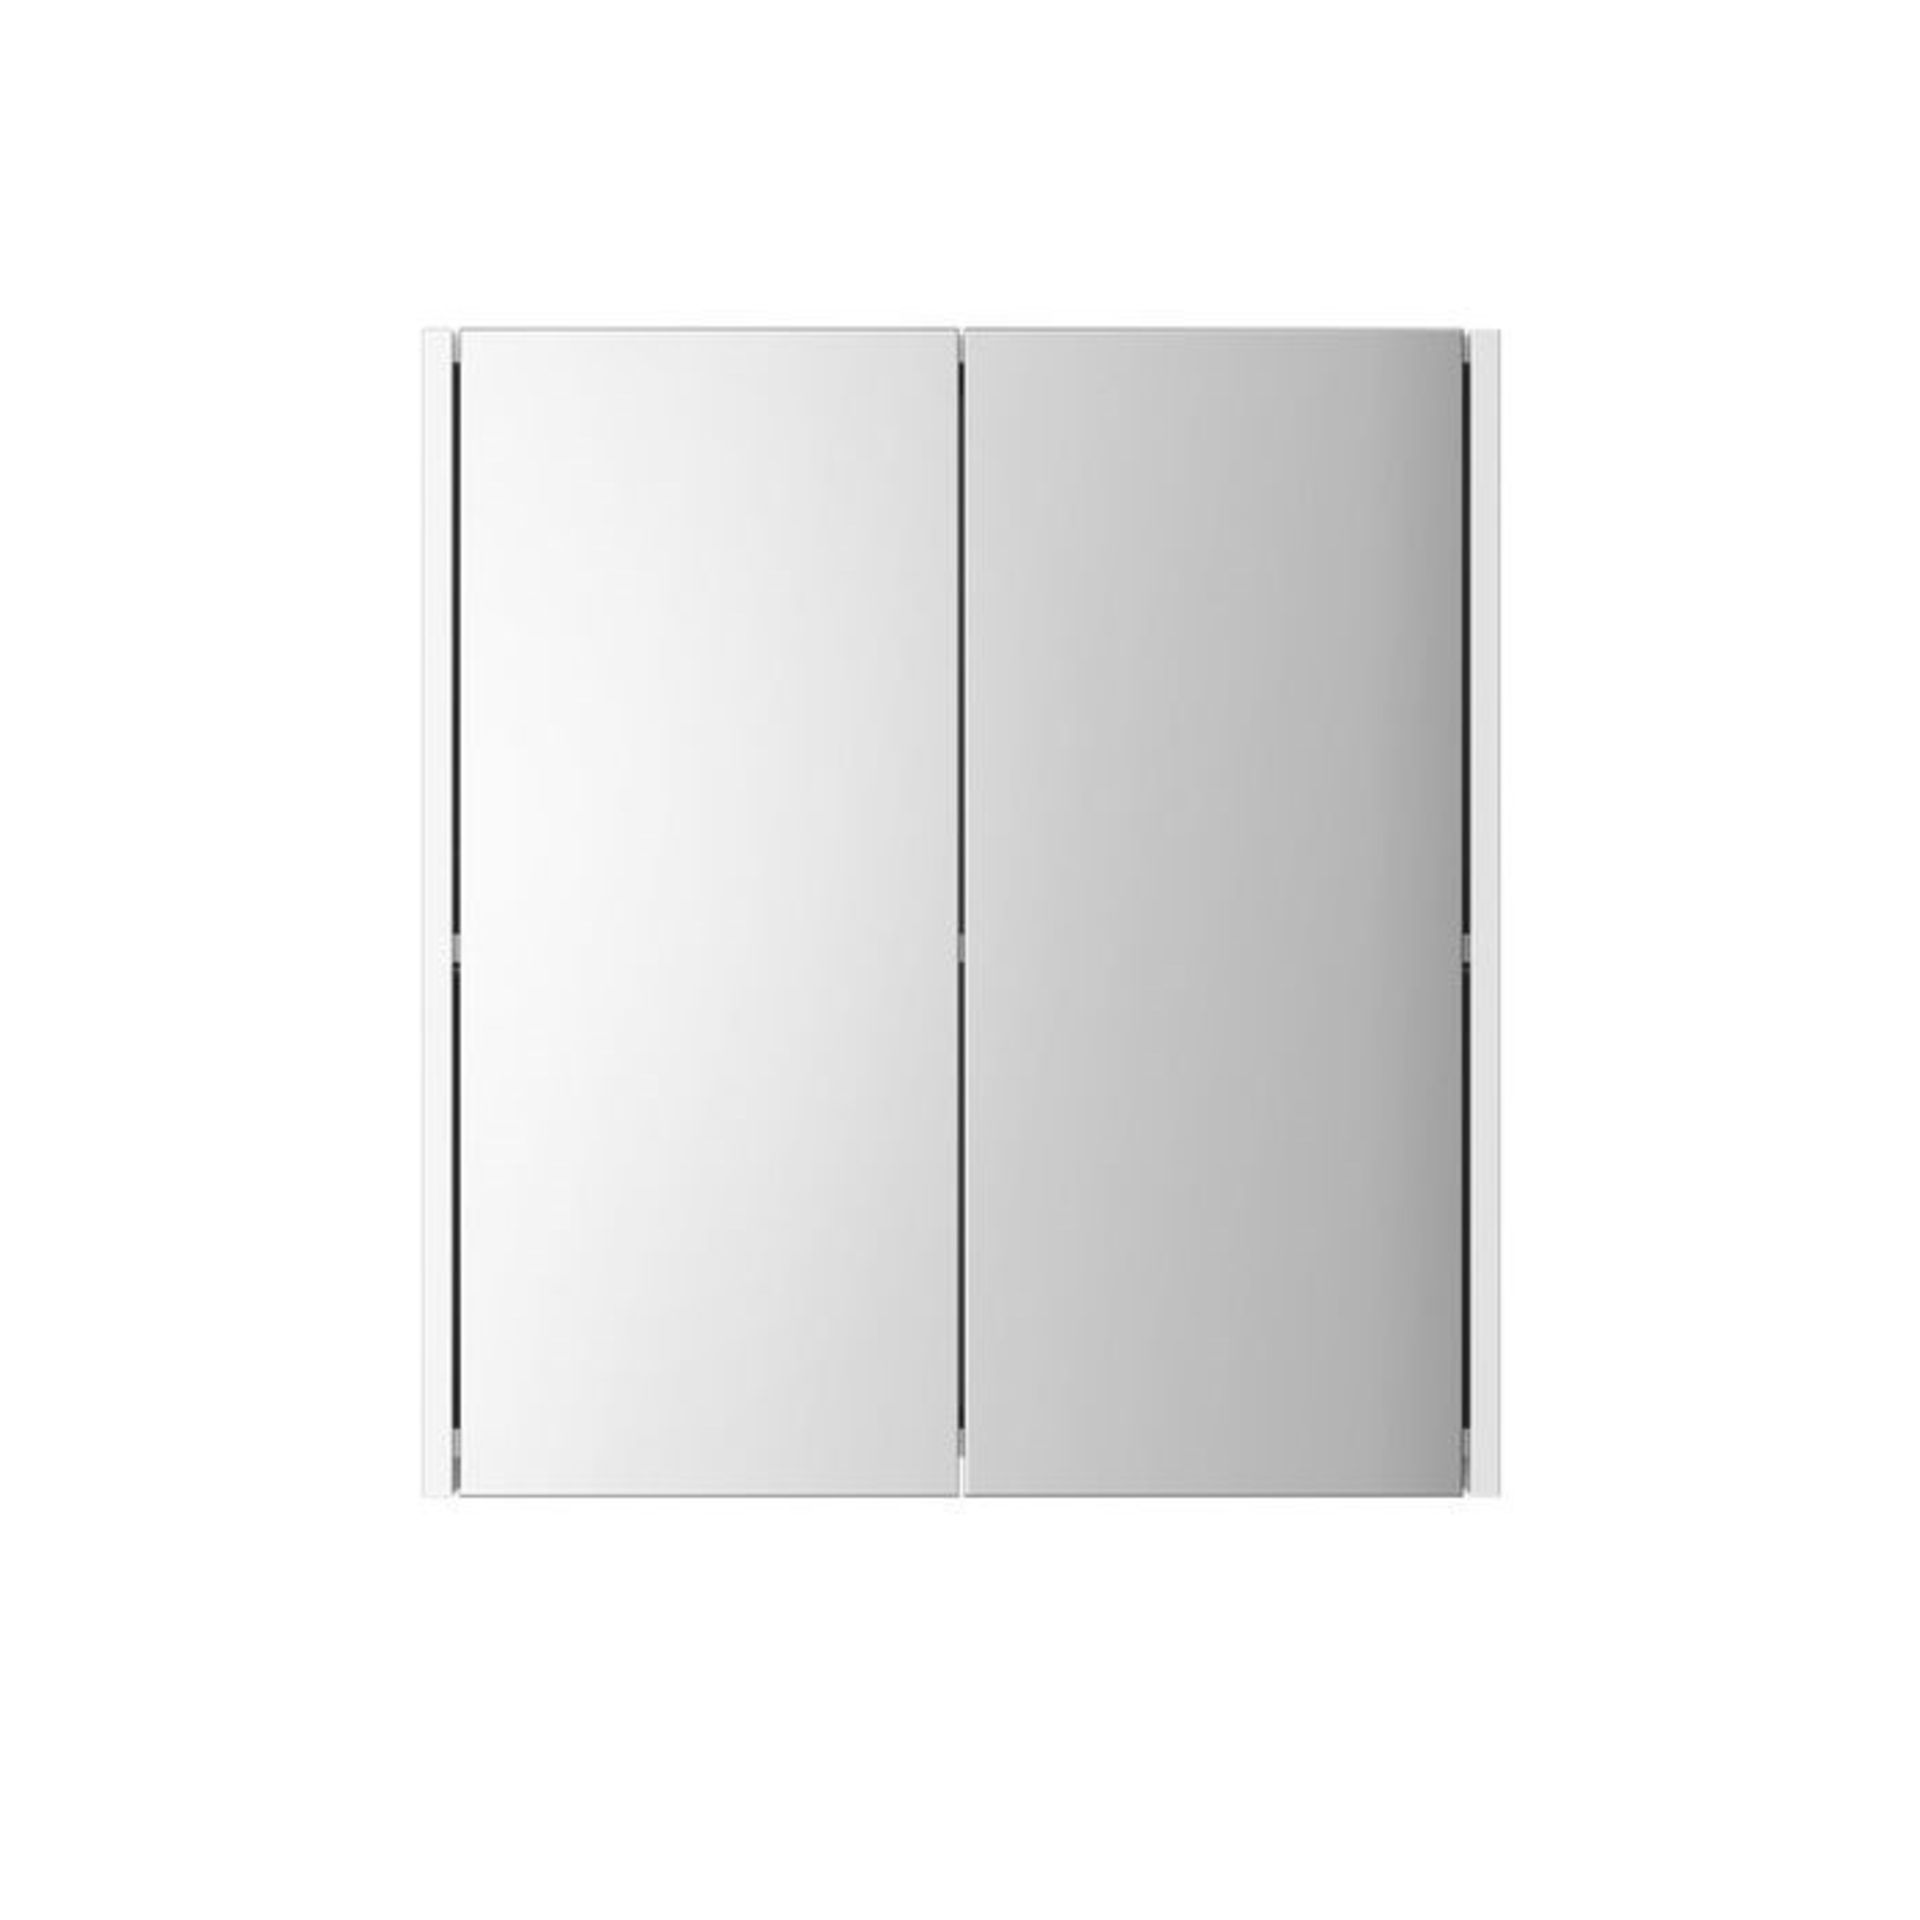 (EY142) 600mm Gloss White Double Door Mirror Cabinet. Double door opening concealing internal - Image 2 of 2